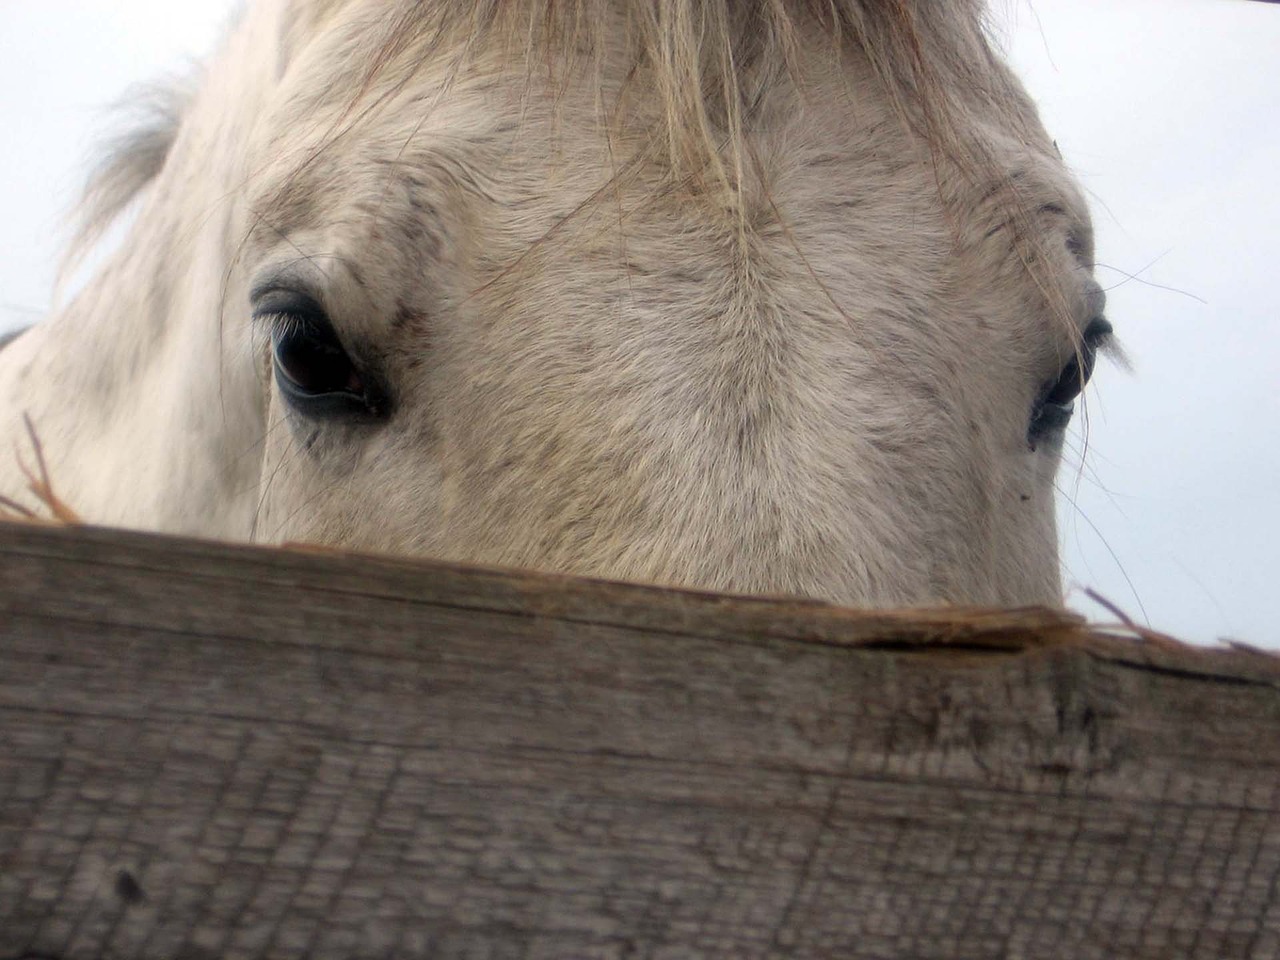 Image - horse mare stallion eyes detail